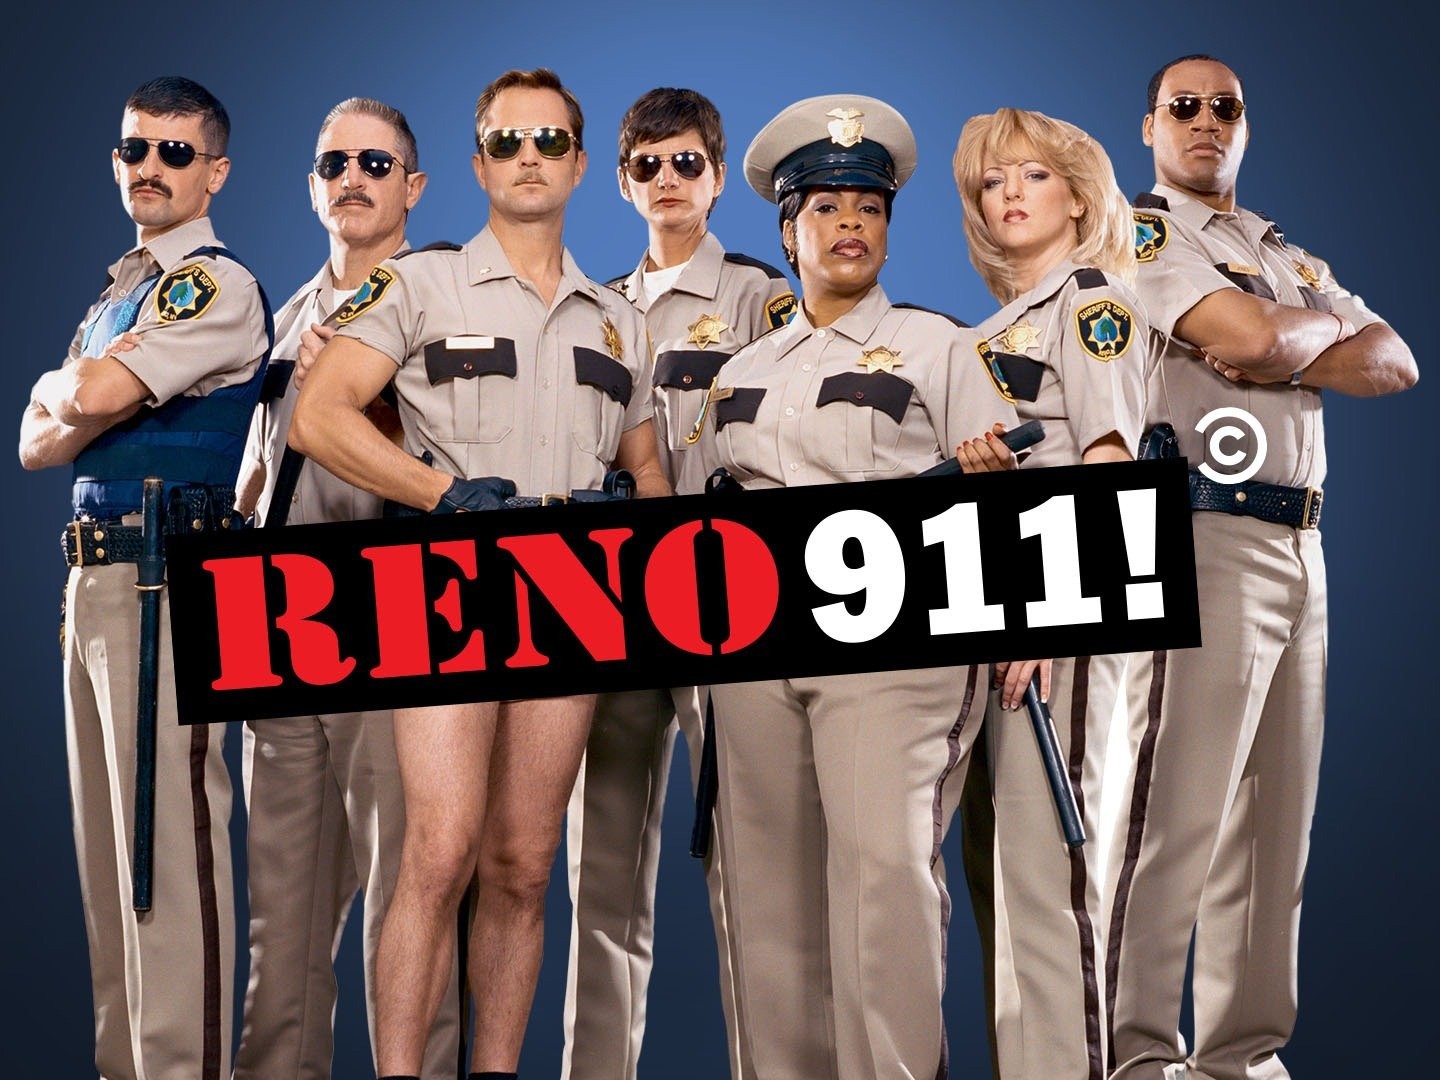 Prime Video: RENO 911! Season 7